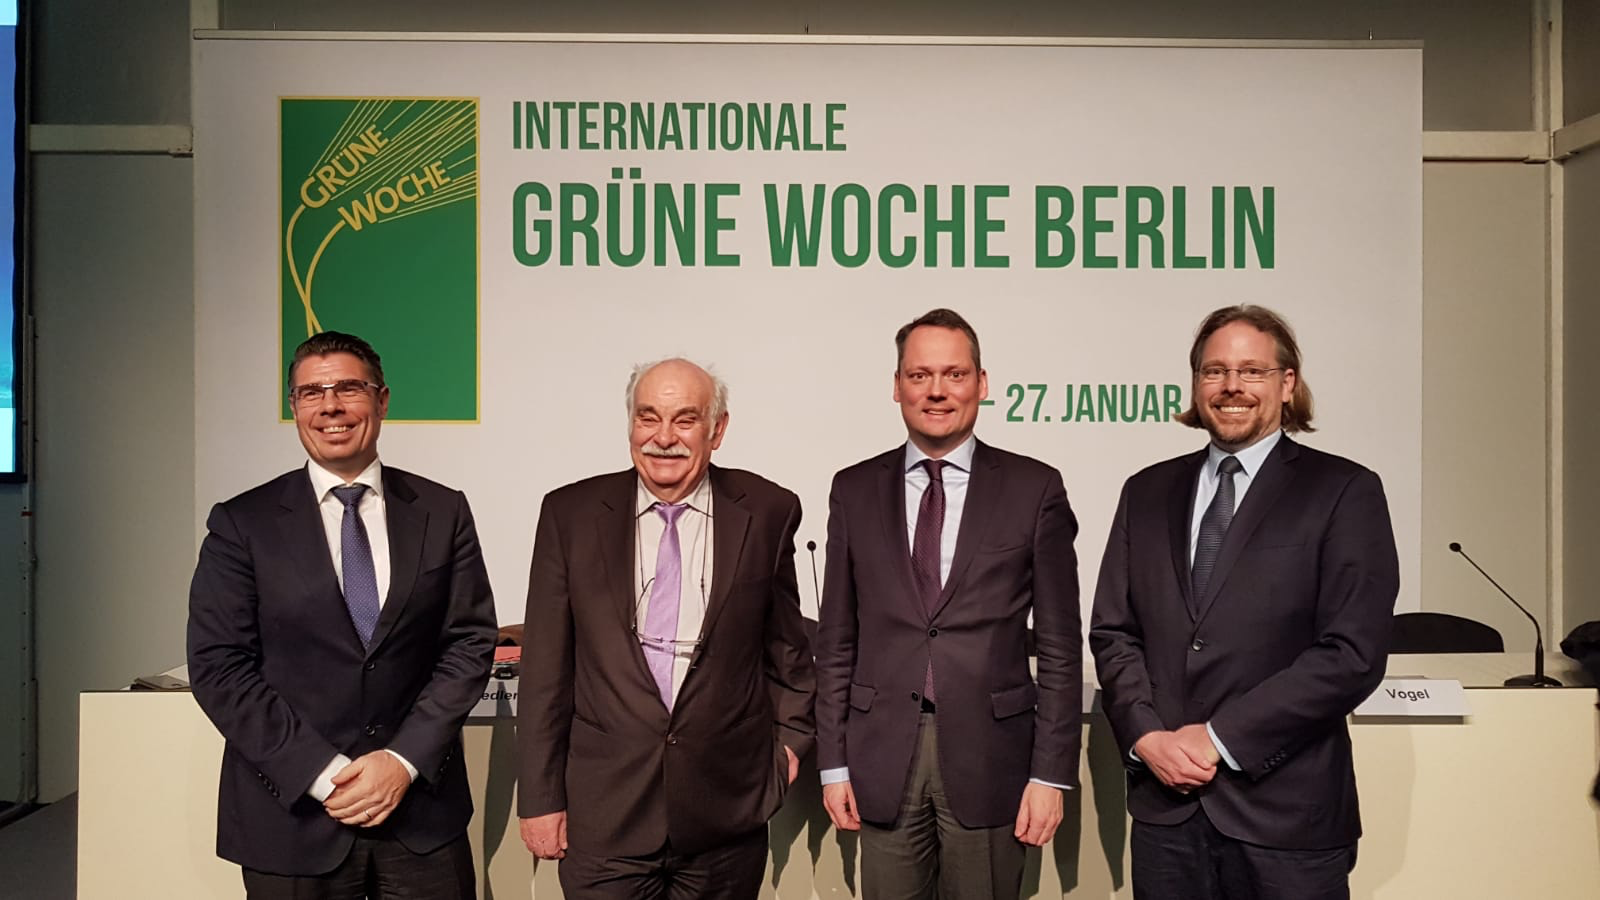 Gruppenfoto der Referenten Internationale Grüne Woche